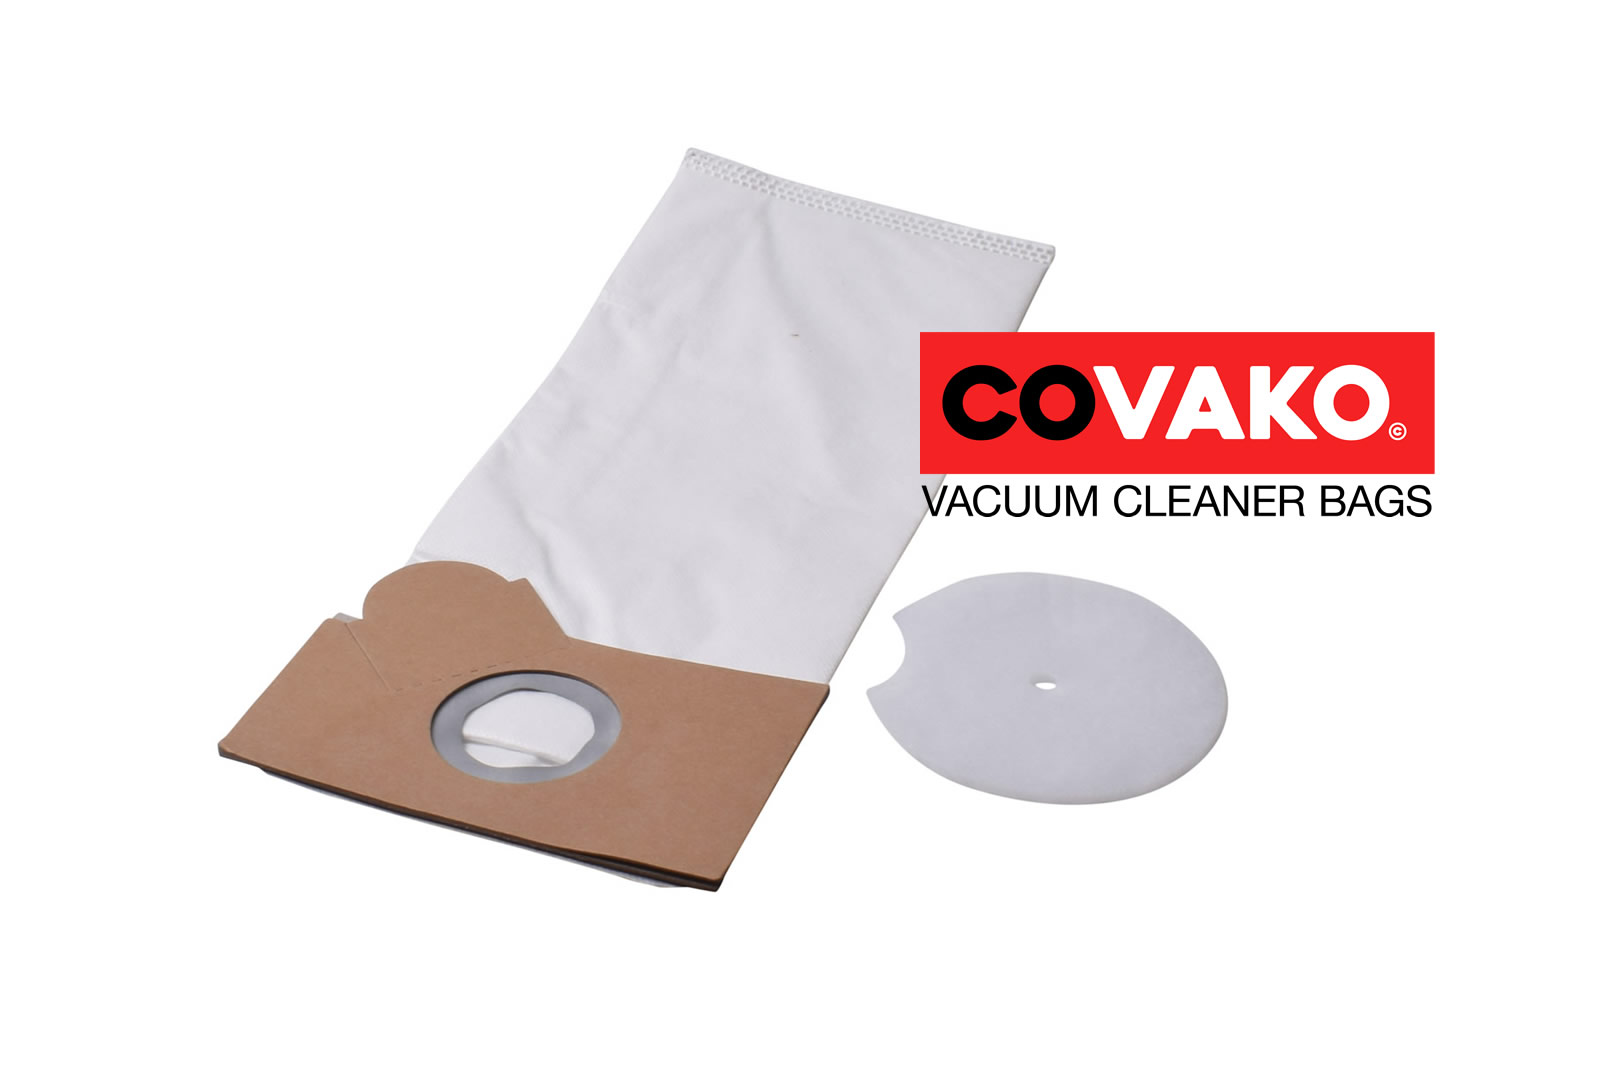 Fakir Combi 17-46 / Synthesis - Fakir vacuum cleaner bags